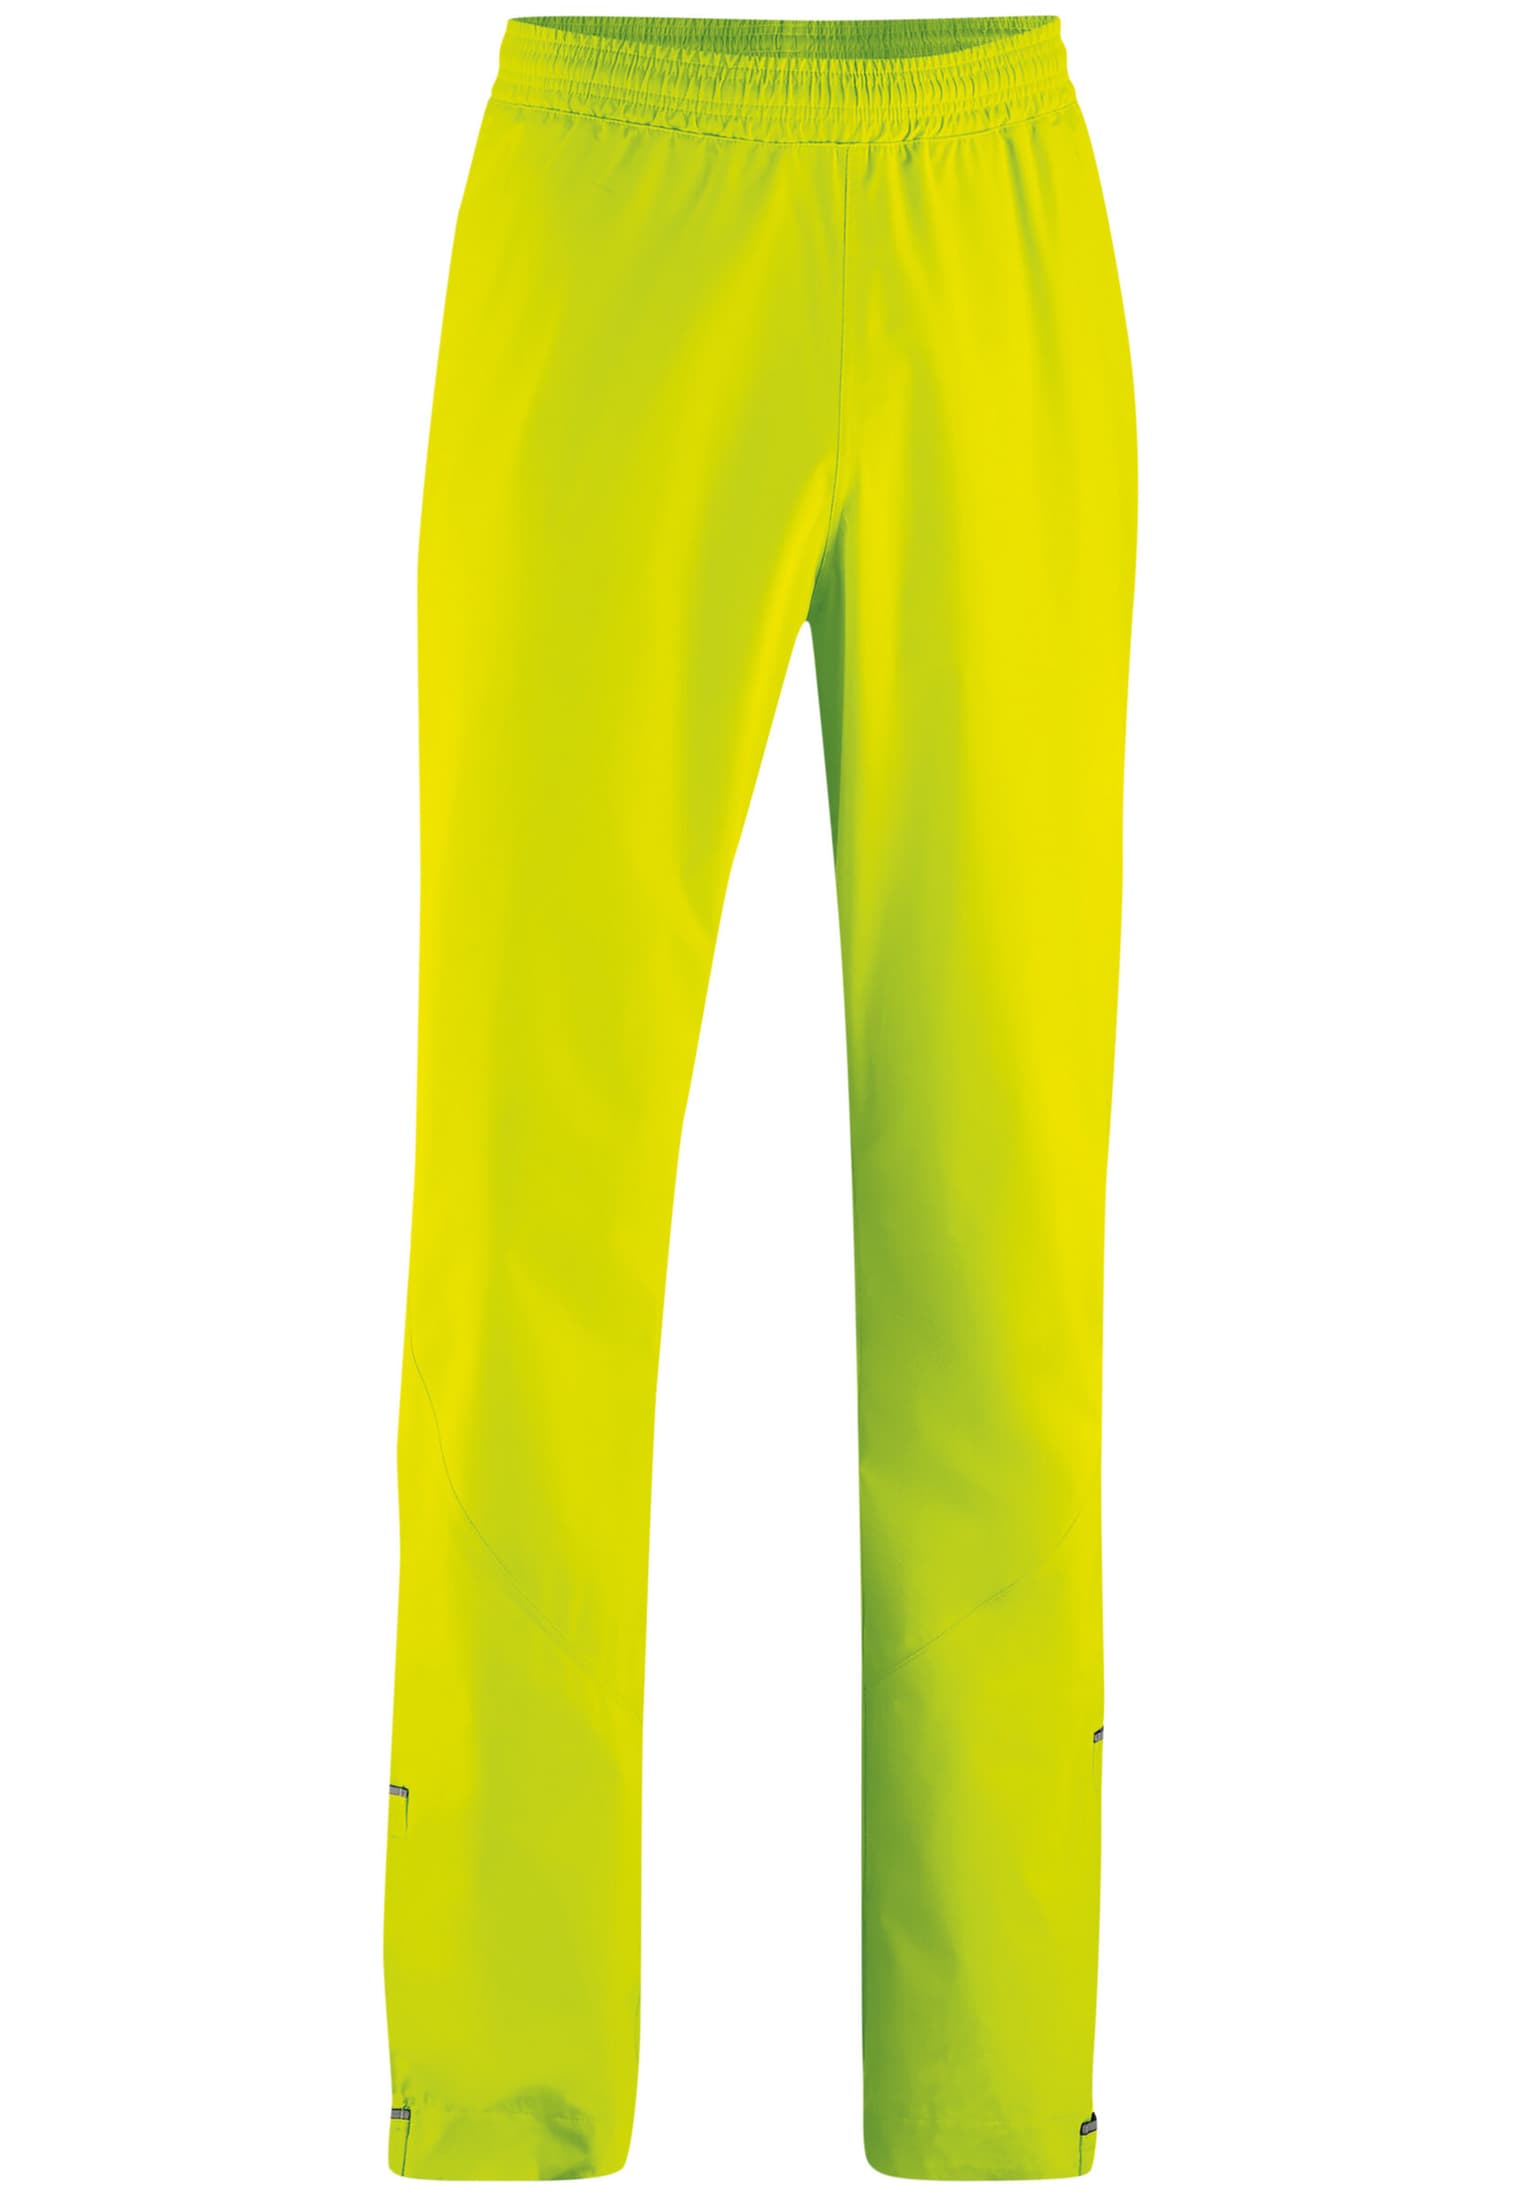 Gonso Gonso Nandro Bikehose giallo-neon 1